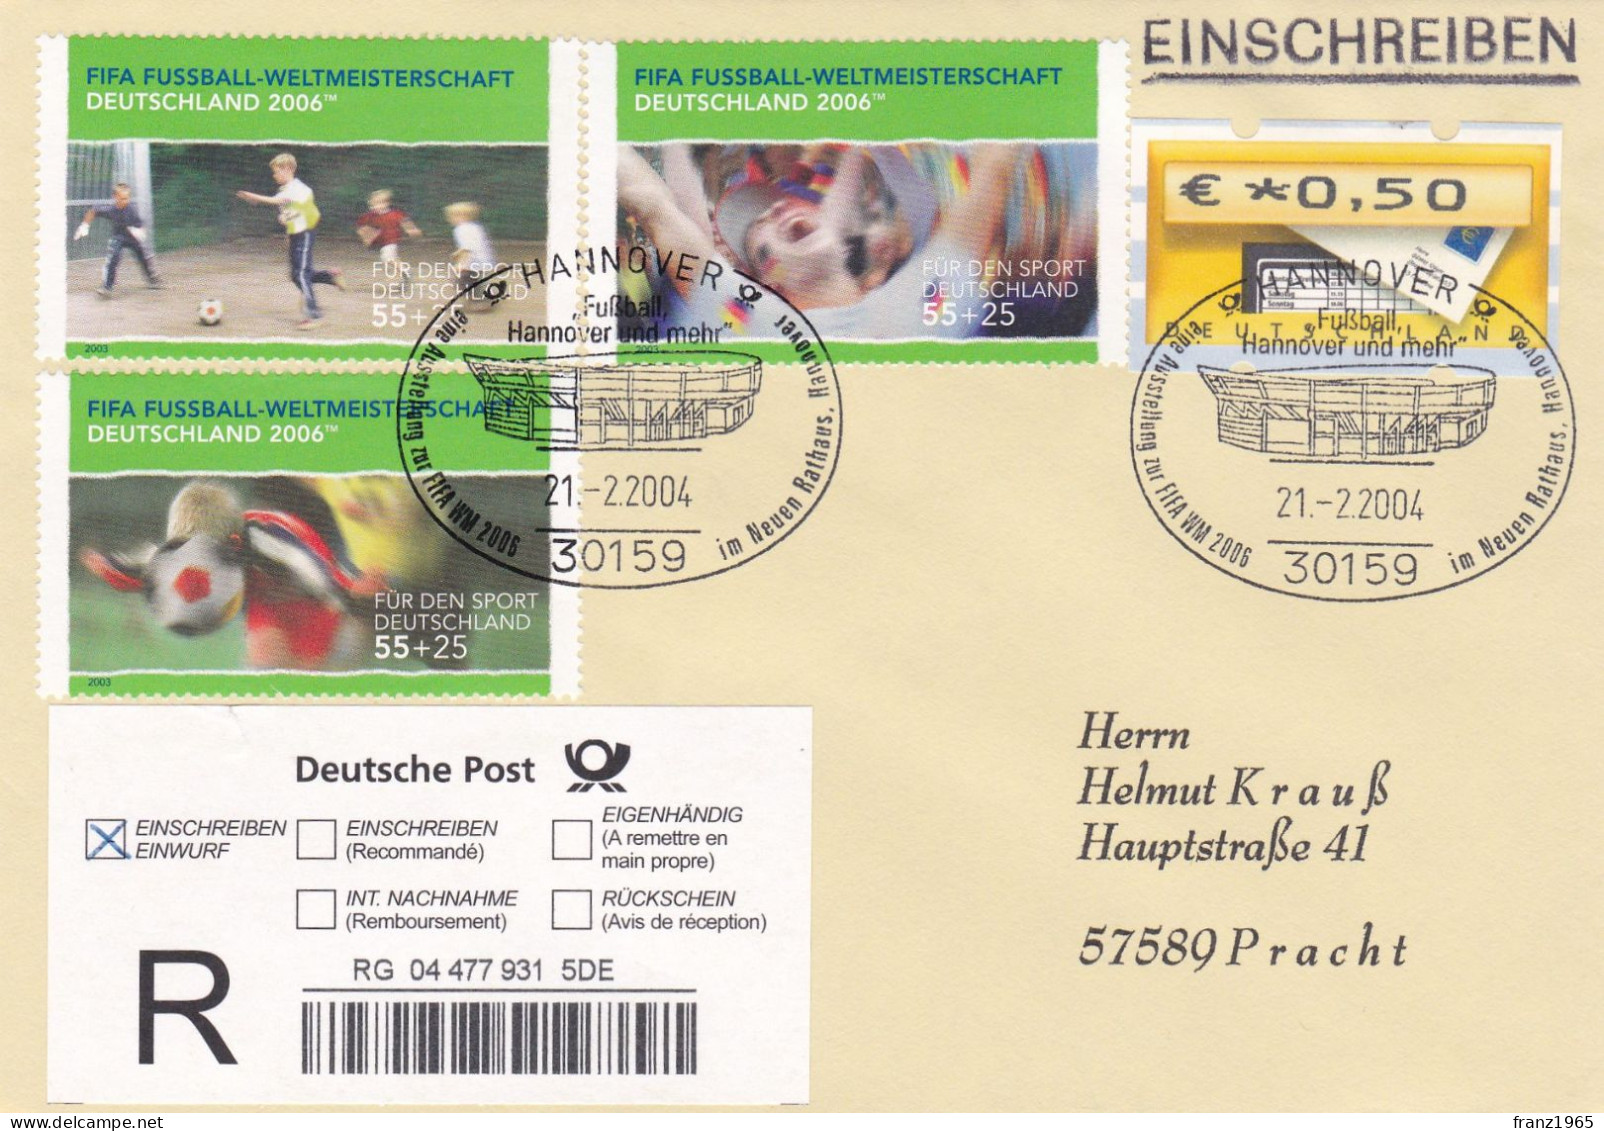 FIFA-WM 2006 - Hannover, 21.2.2004 - 2006 – Germany